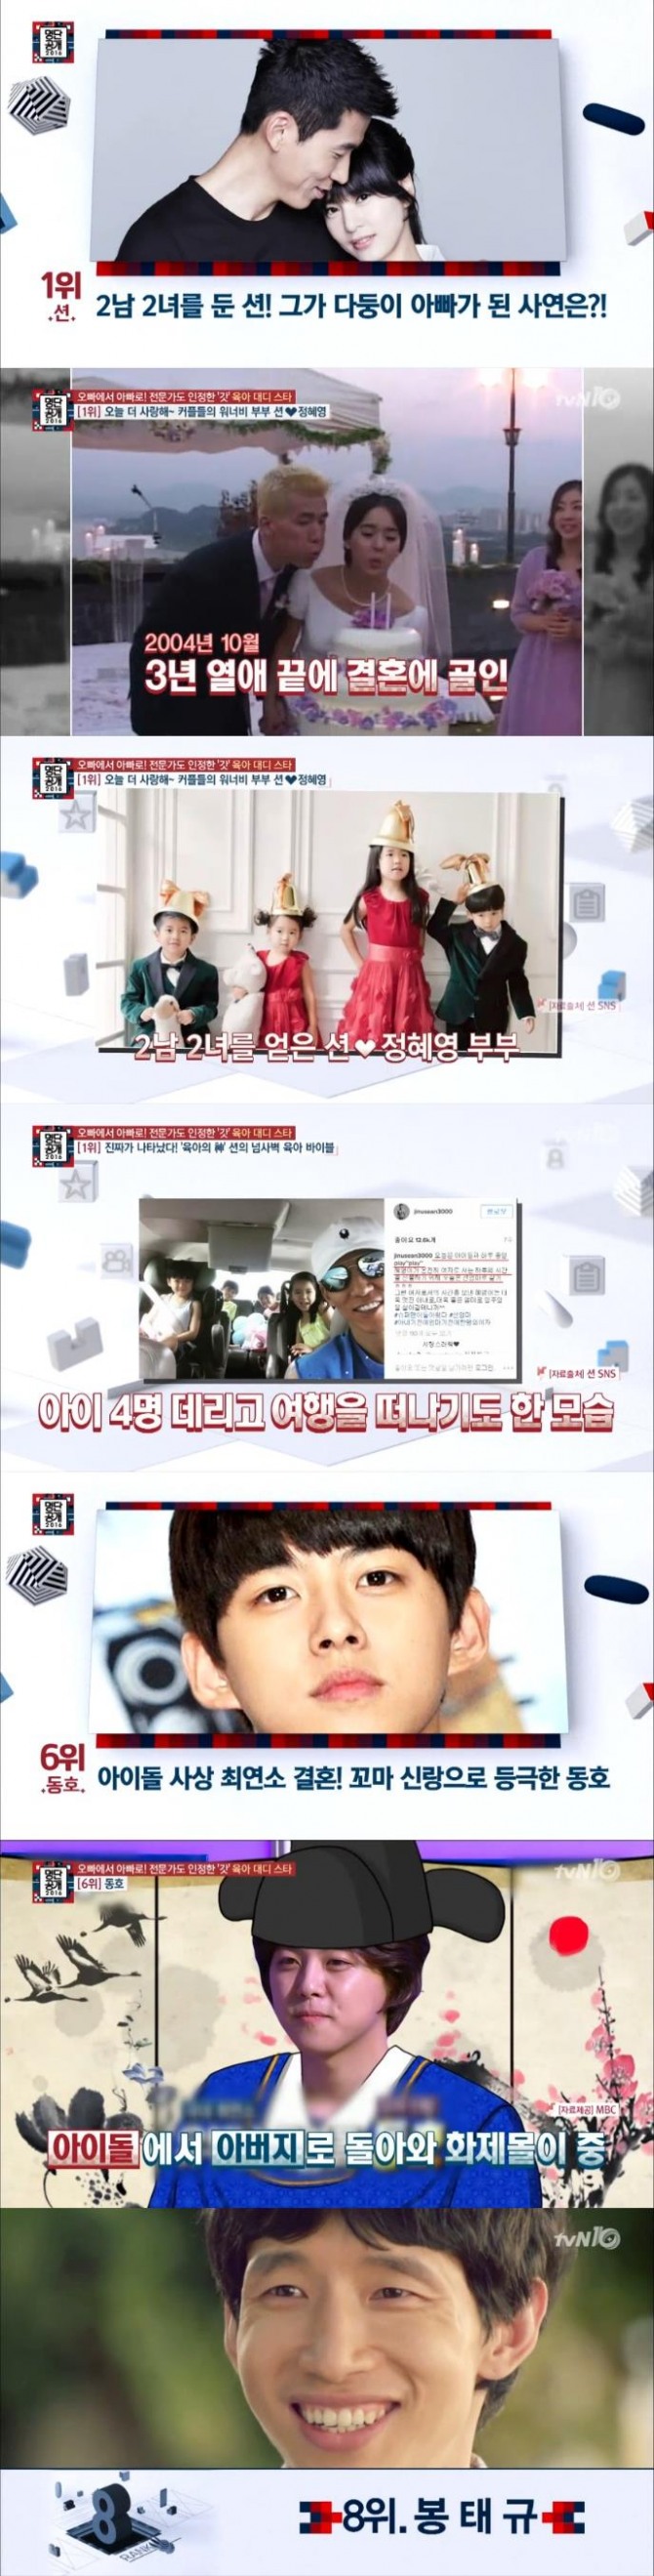 12일 밤 방송된 tvN '명단공개'에서는 육아대디 스타가 공개된 가운데 션이 1위에 올랐다./사진=tvN 방송 캡처